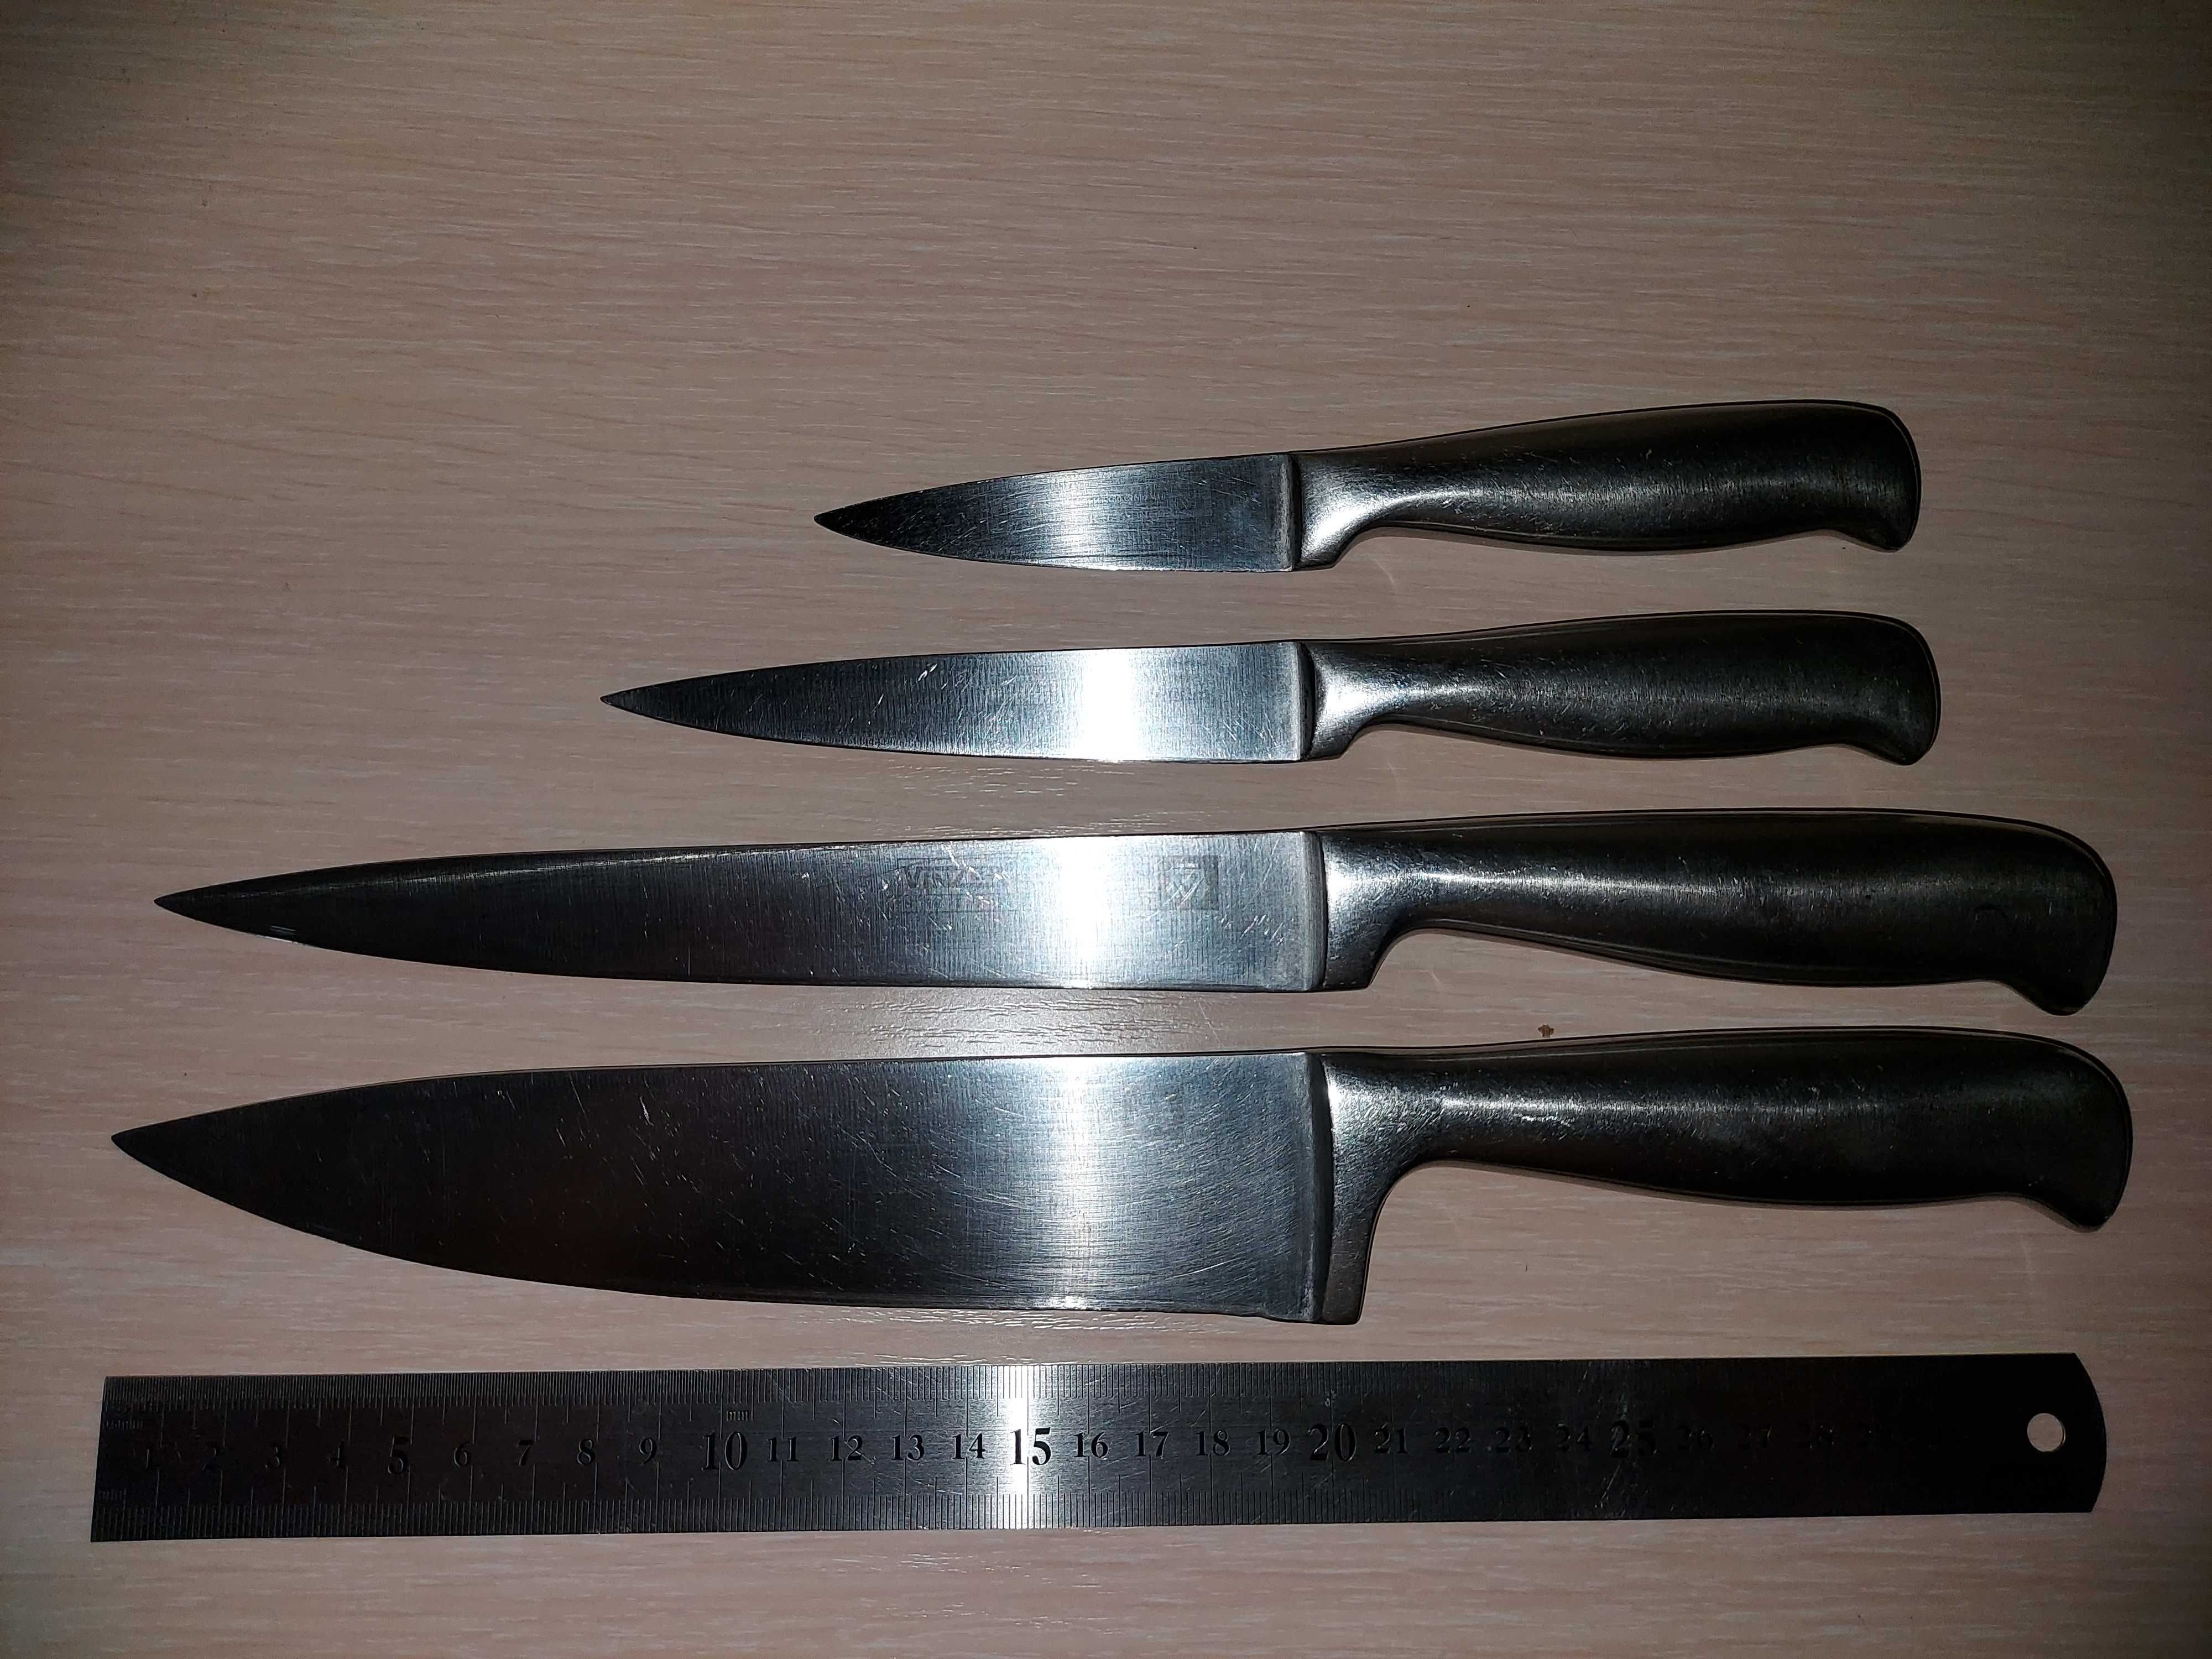 Ножи кухонные разные отличного качества